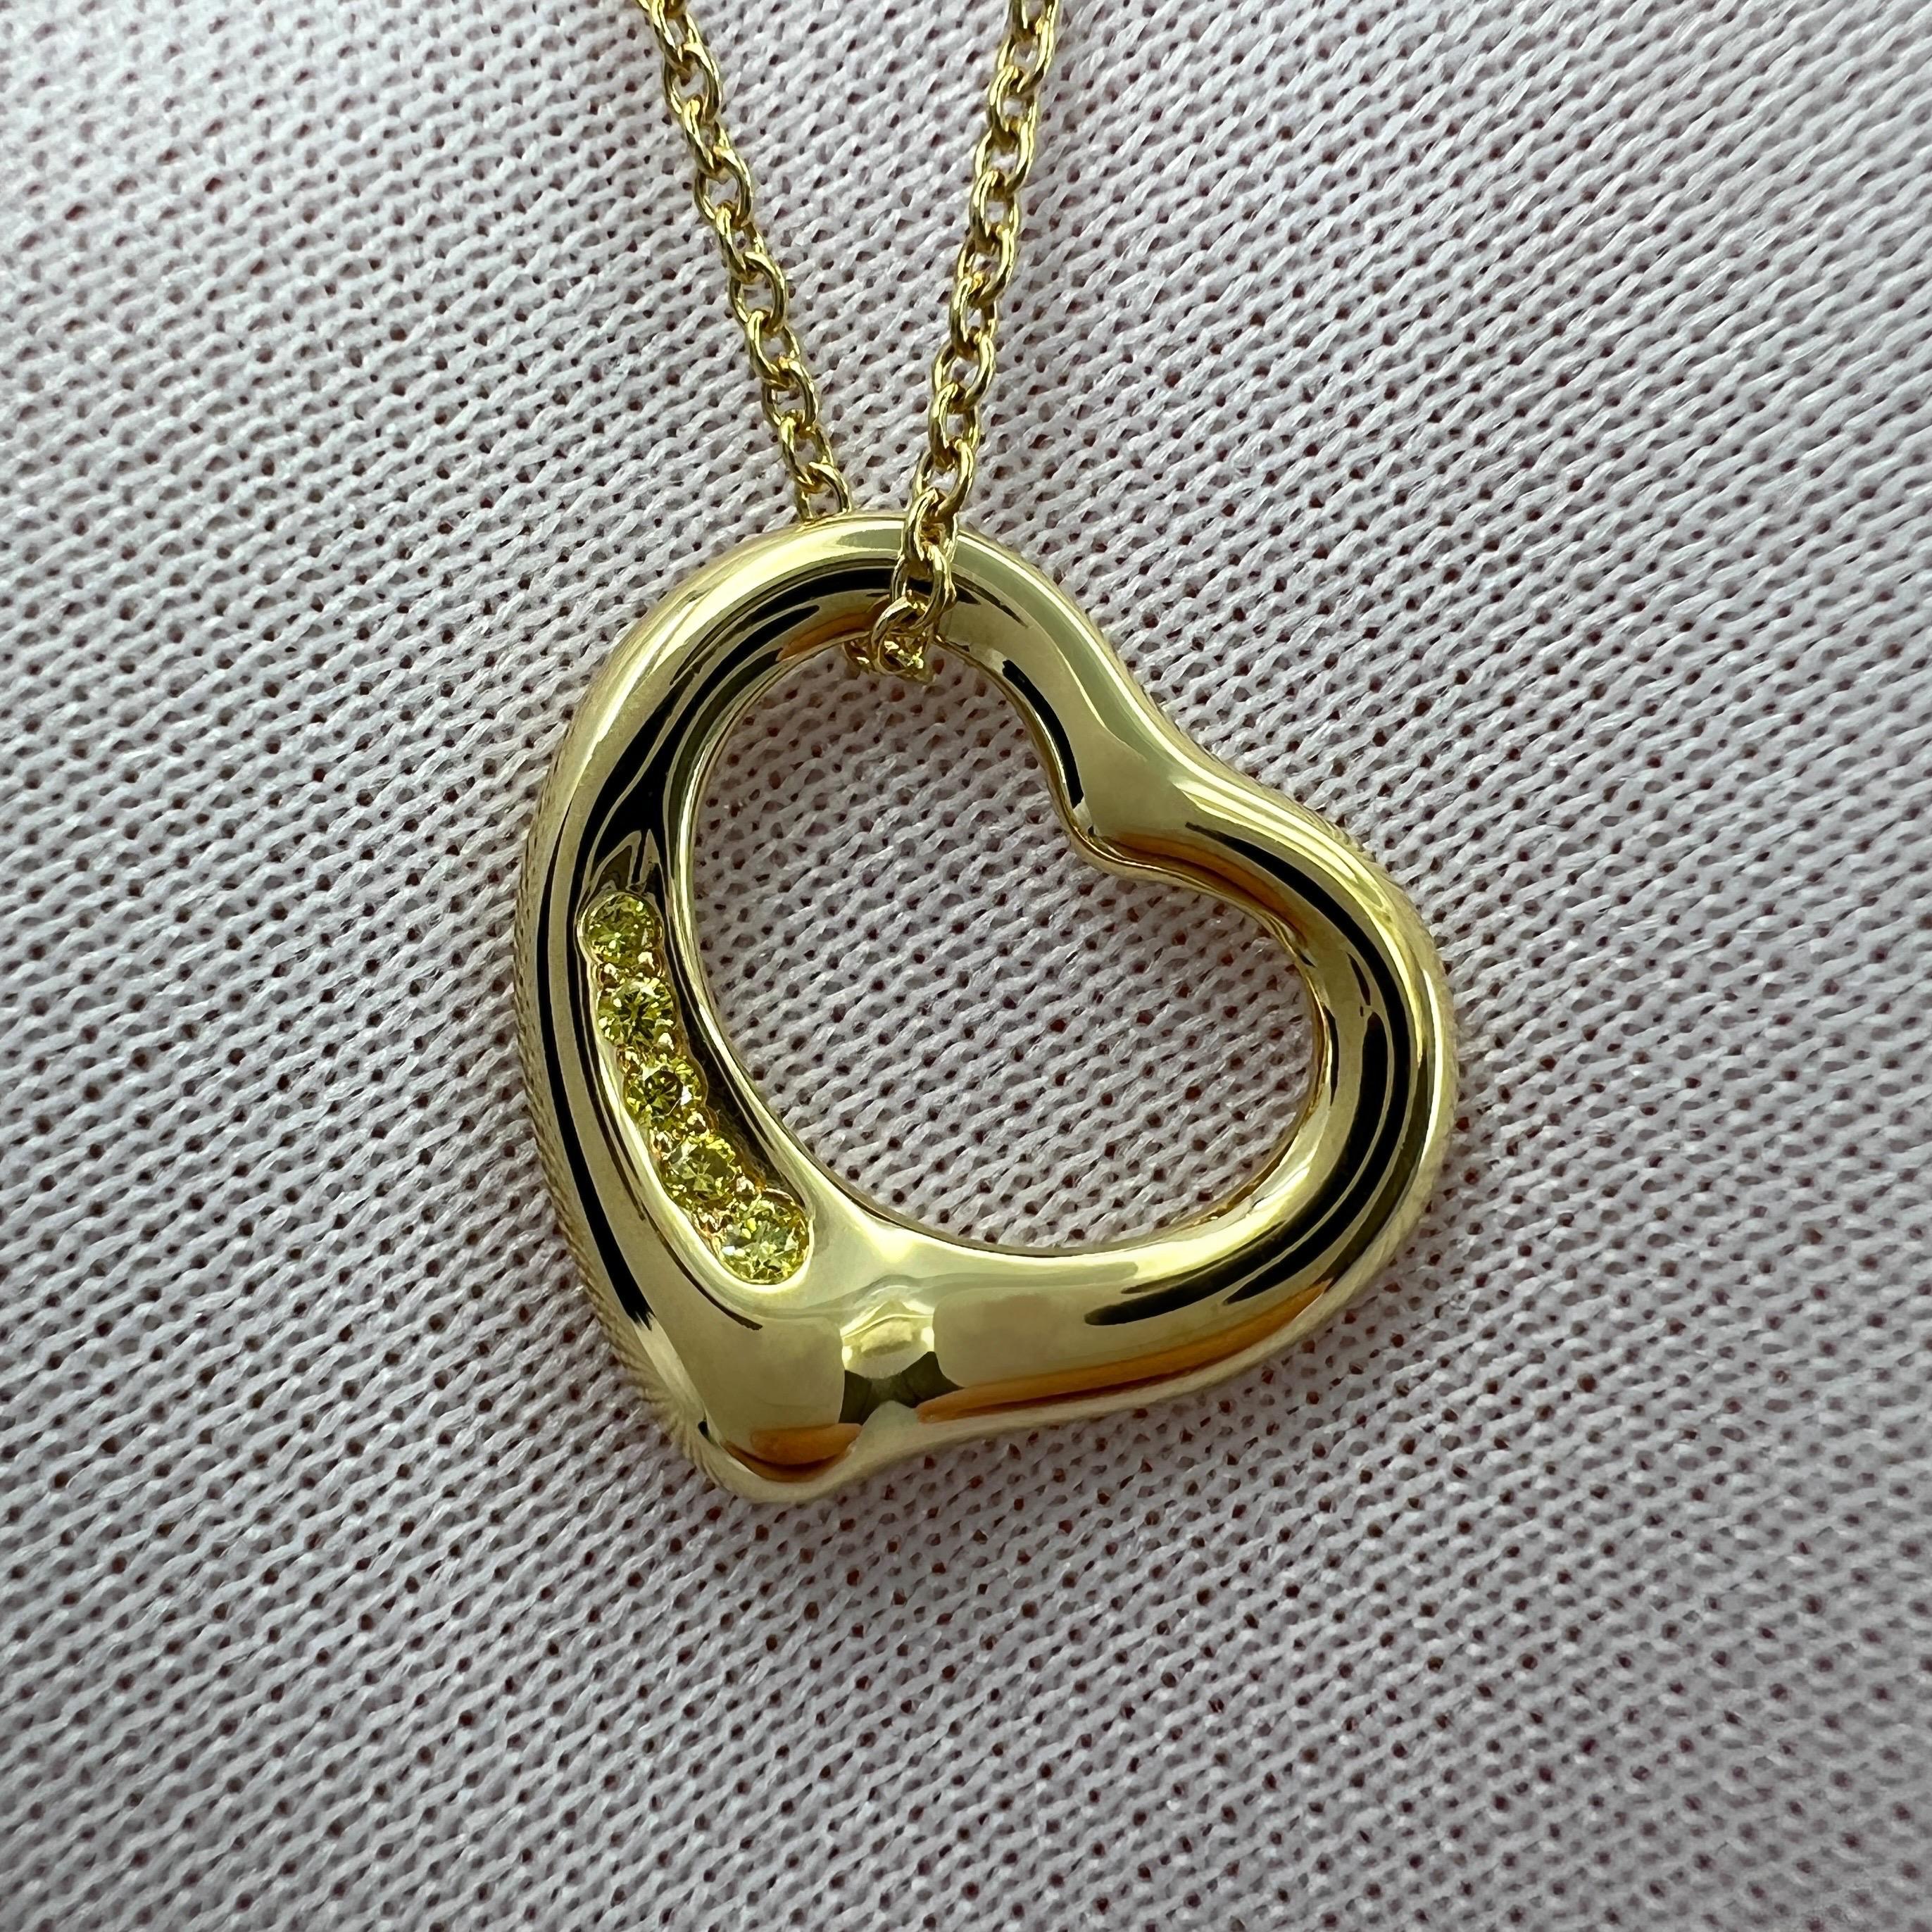 Tiffany & Co. Elsa Peretti Open Heart Yellow Diamond 18k Gold Pendant Necklace For Sale 3